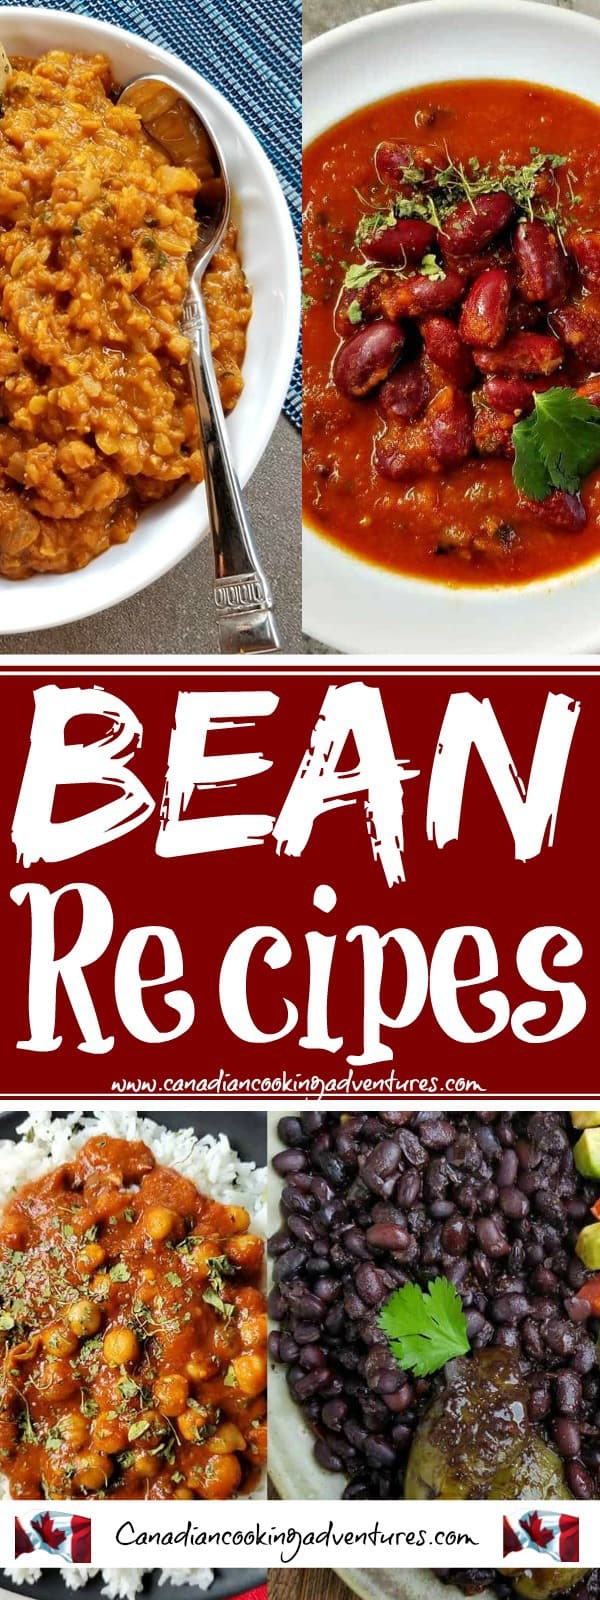 Bean recipes